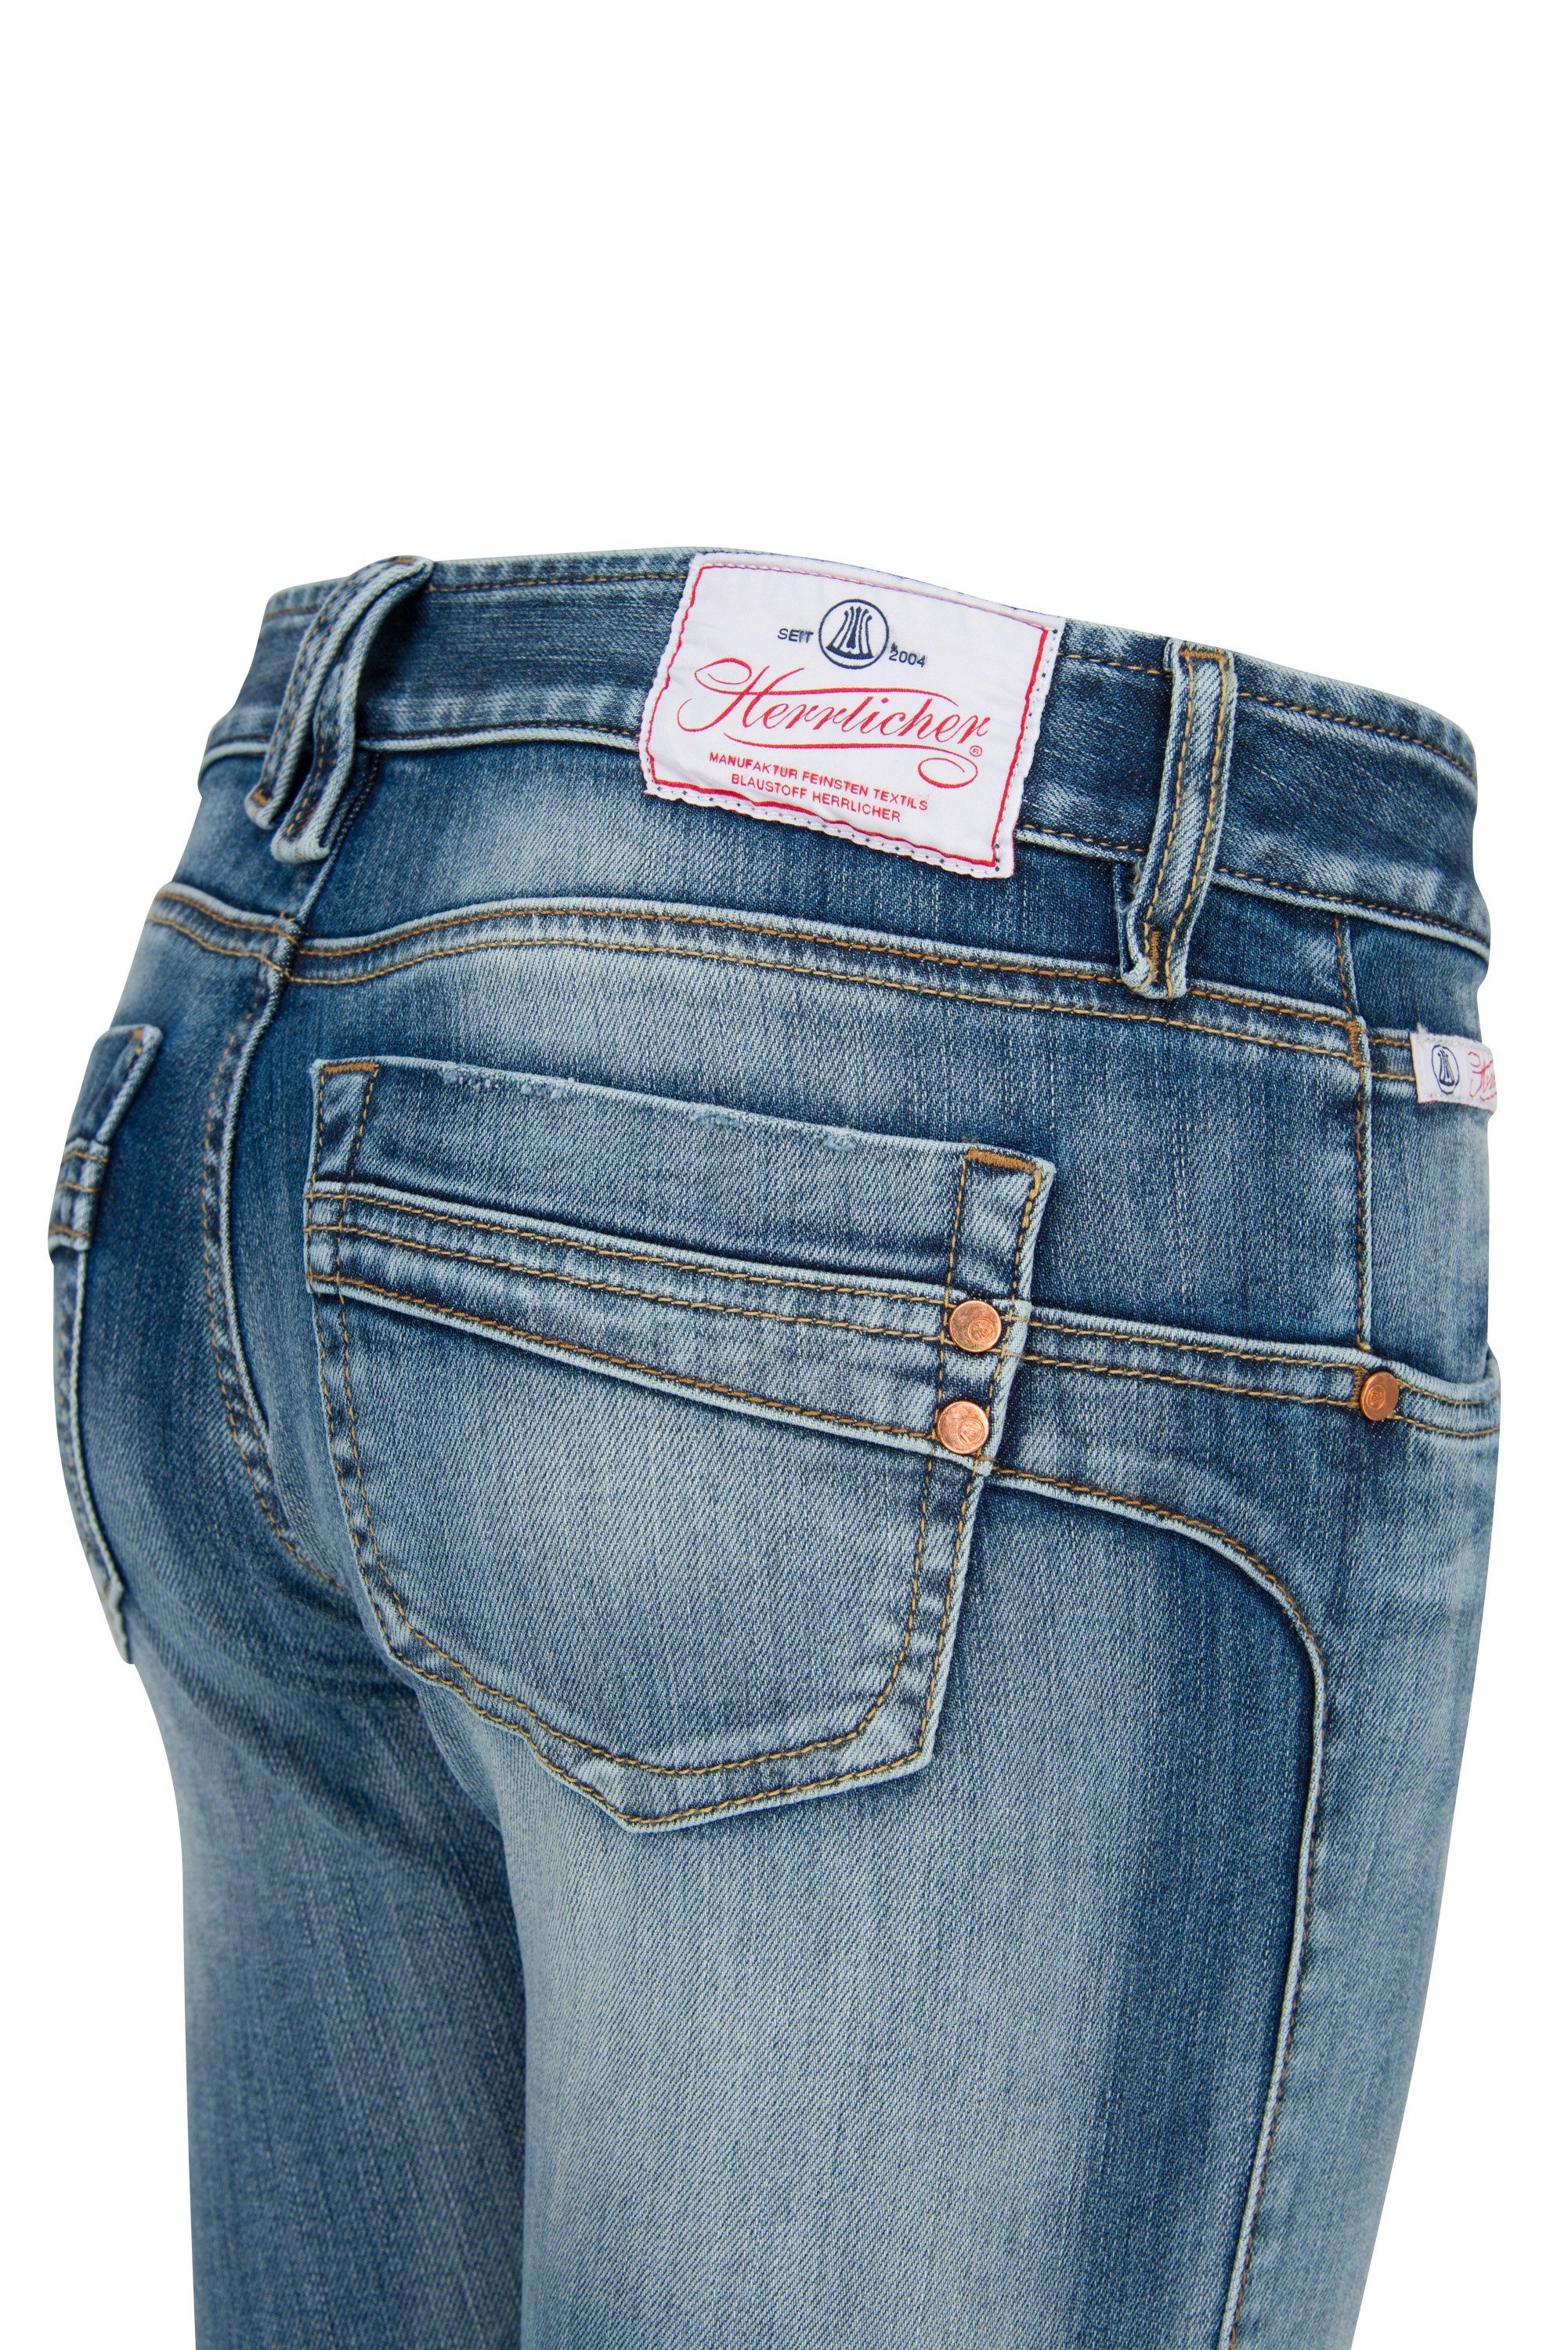 Herrlicher Stretch-Jeans TOUCH Denim Slim frost Powerstretch HERRLICHER 5705-D9666-832